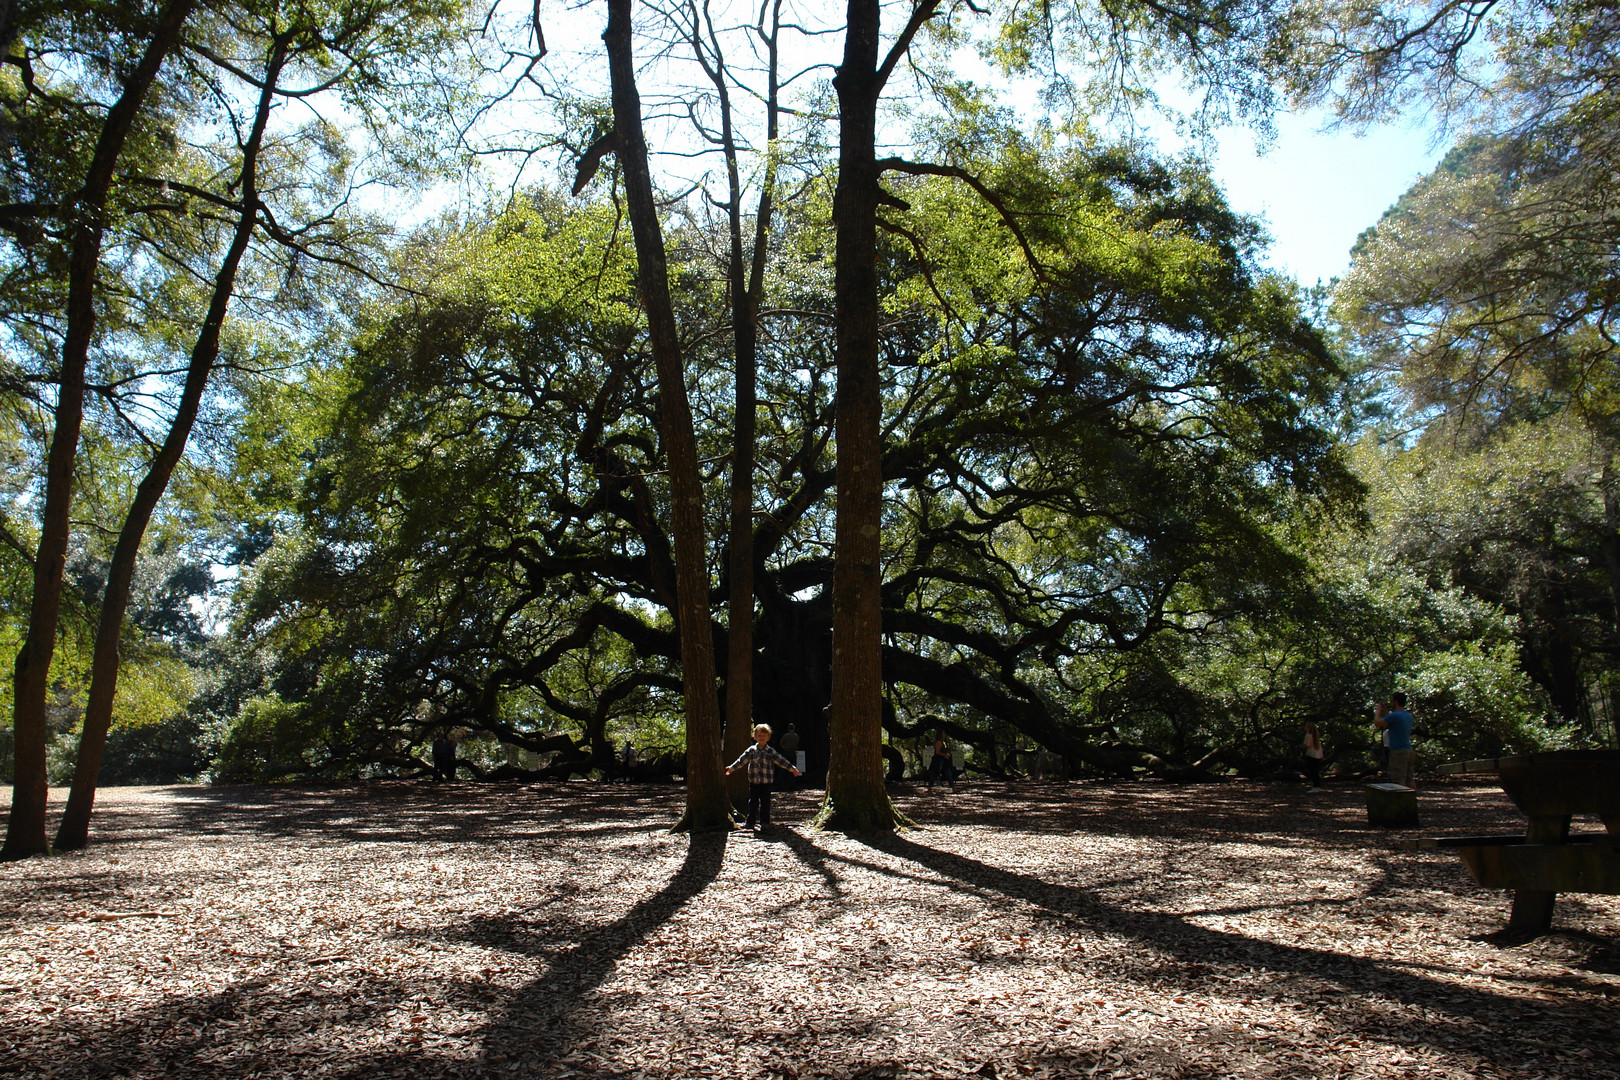 Angel Oak Charleston South Carolina USA Größte Eiche der Welt / Biggest oak in the world